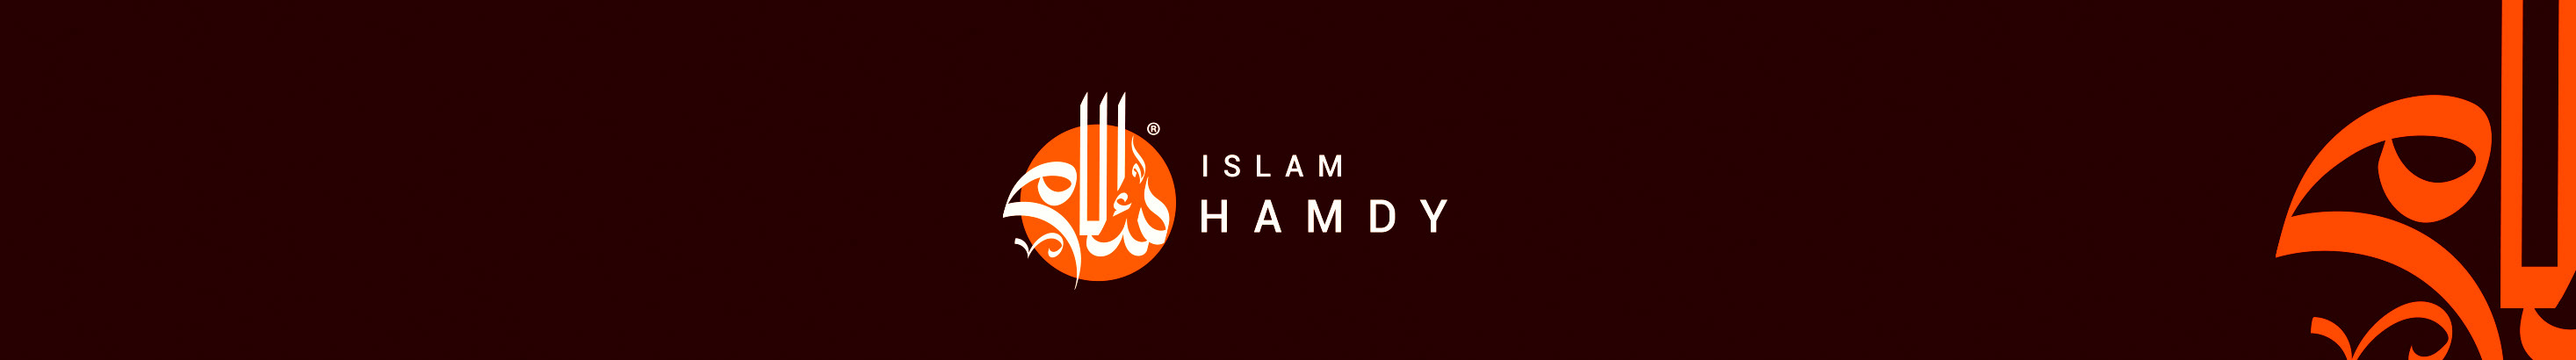 Banner de perfil de Islam Hamdy